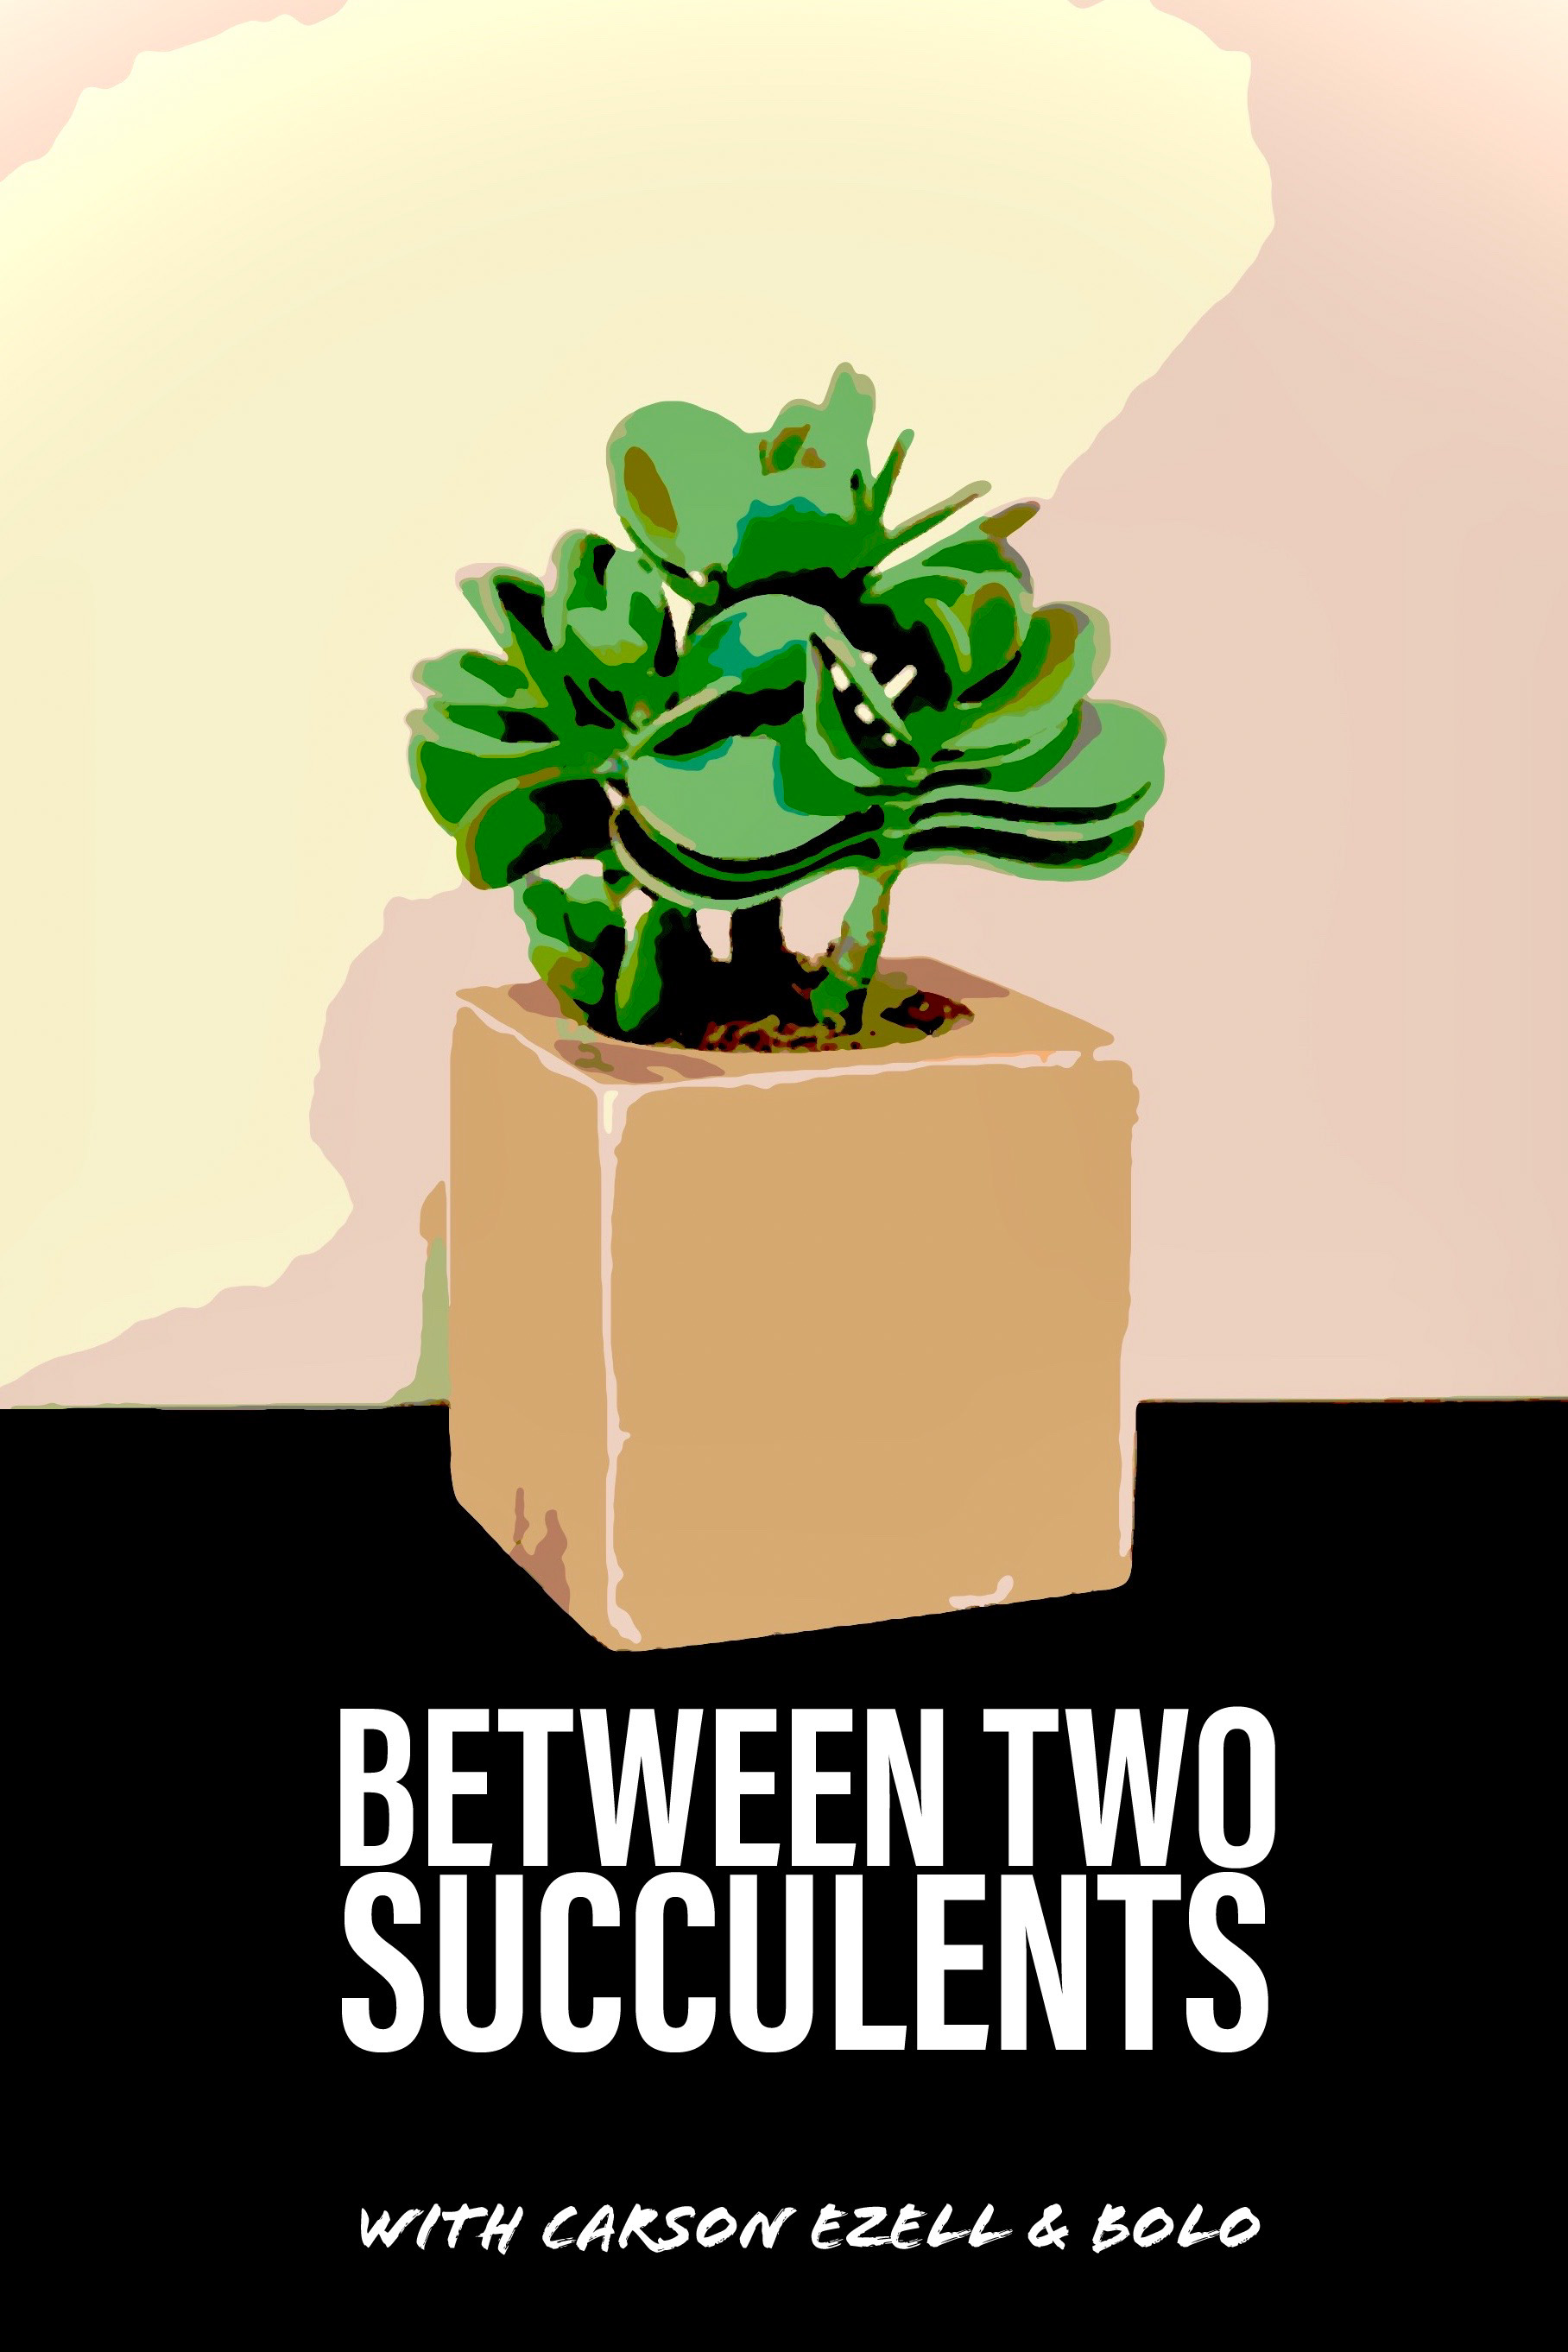 Between Two Succulents